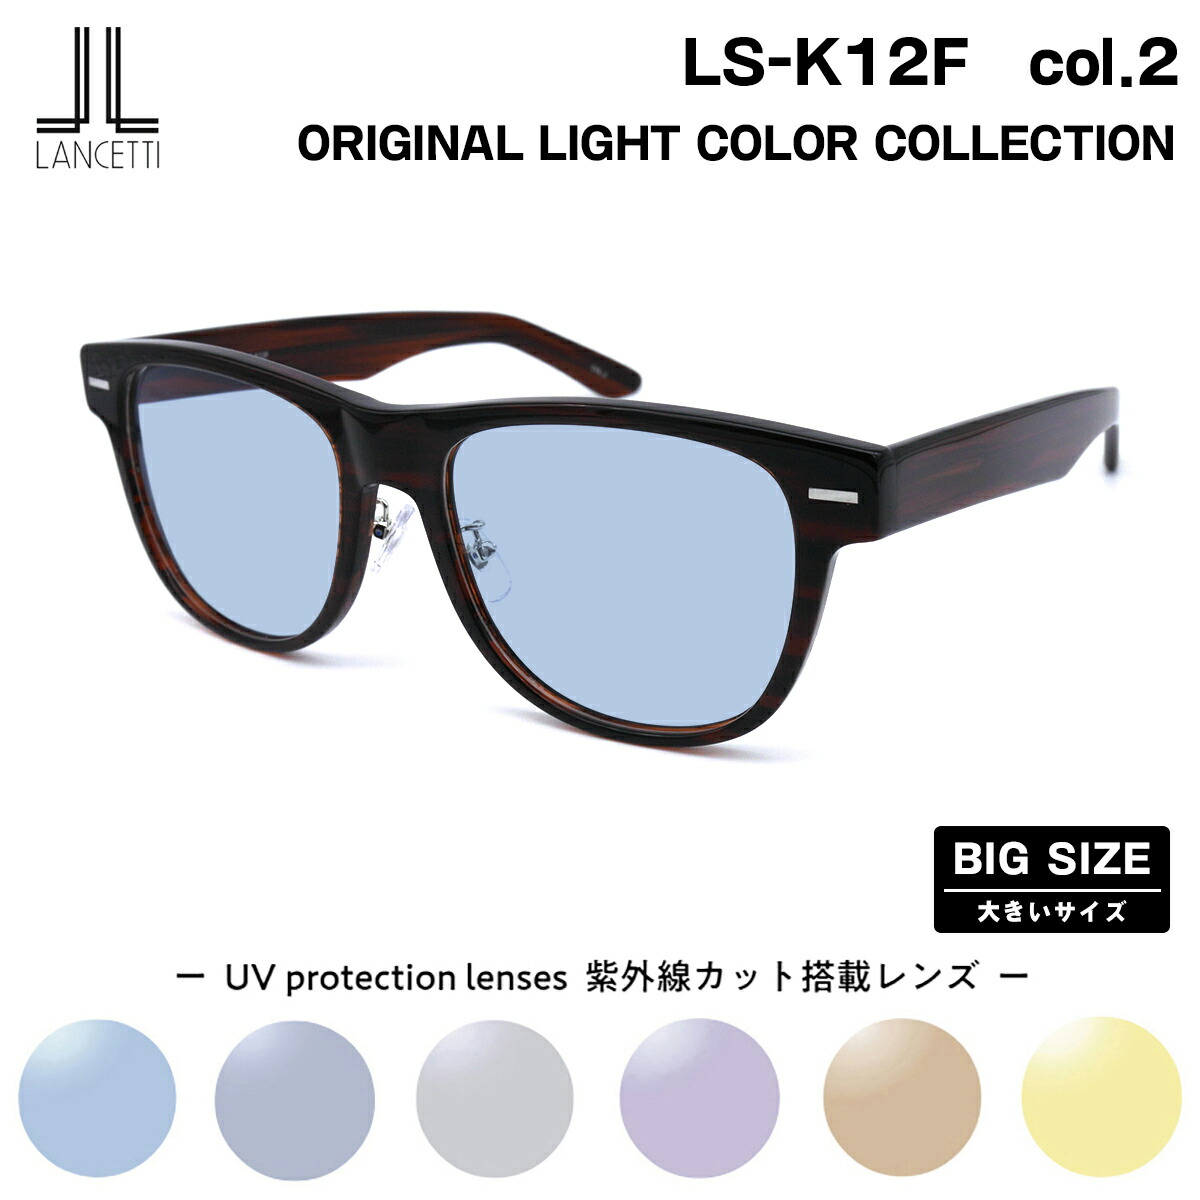 【楽天市場】大きいサイズ サングラス ライトカラー LS-K12F col.1 